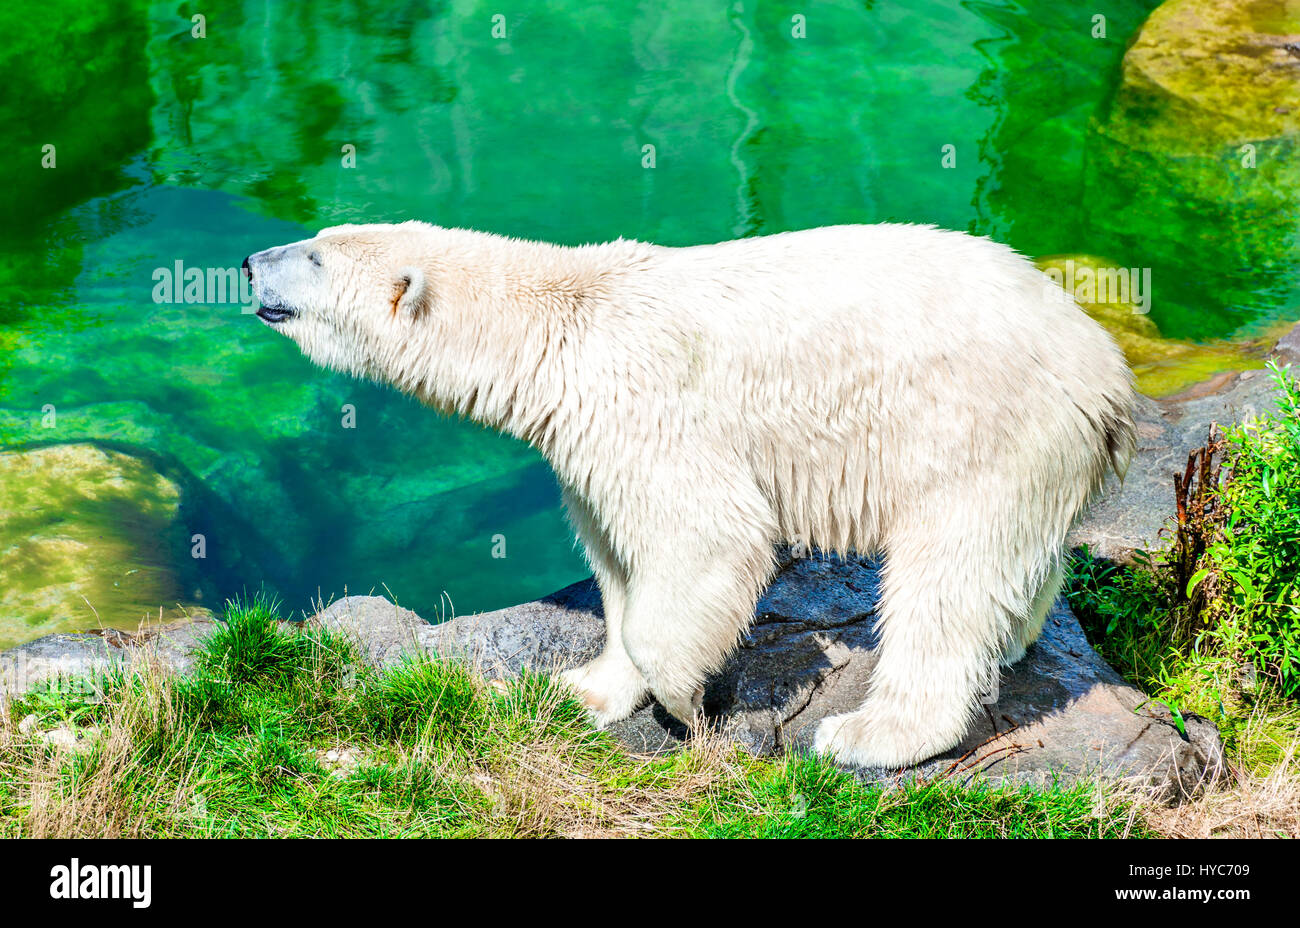 Vienna, Austria. orso polare (ursus maritimus) a schoenbrunn tiergarten, zoo garden in Wien. Foto Stock